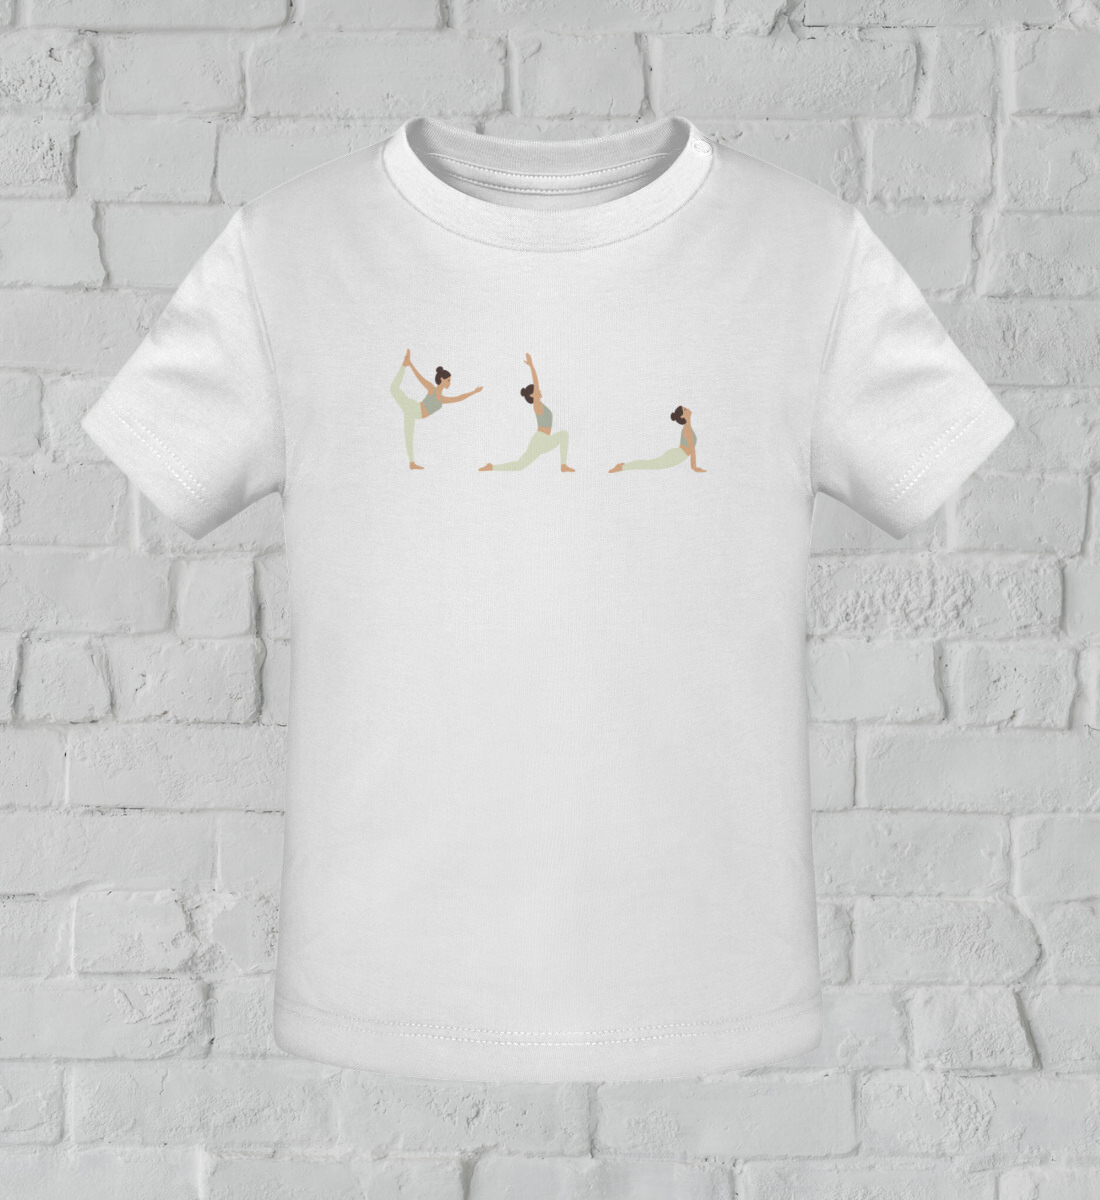 yoga posen l kinder yoga shirt weiß l kinder yoga bekleidung l nachhaltige mode für kinder l kinder mode online shoppen